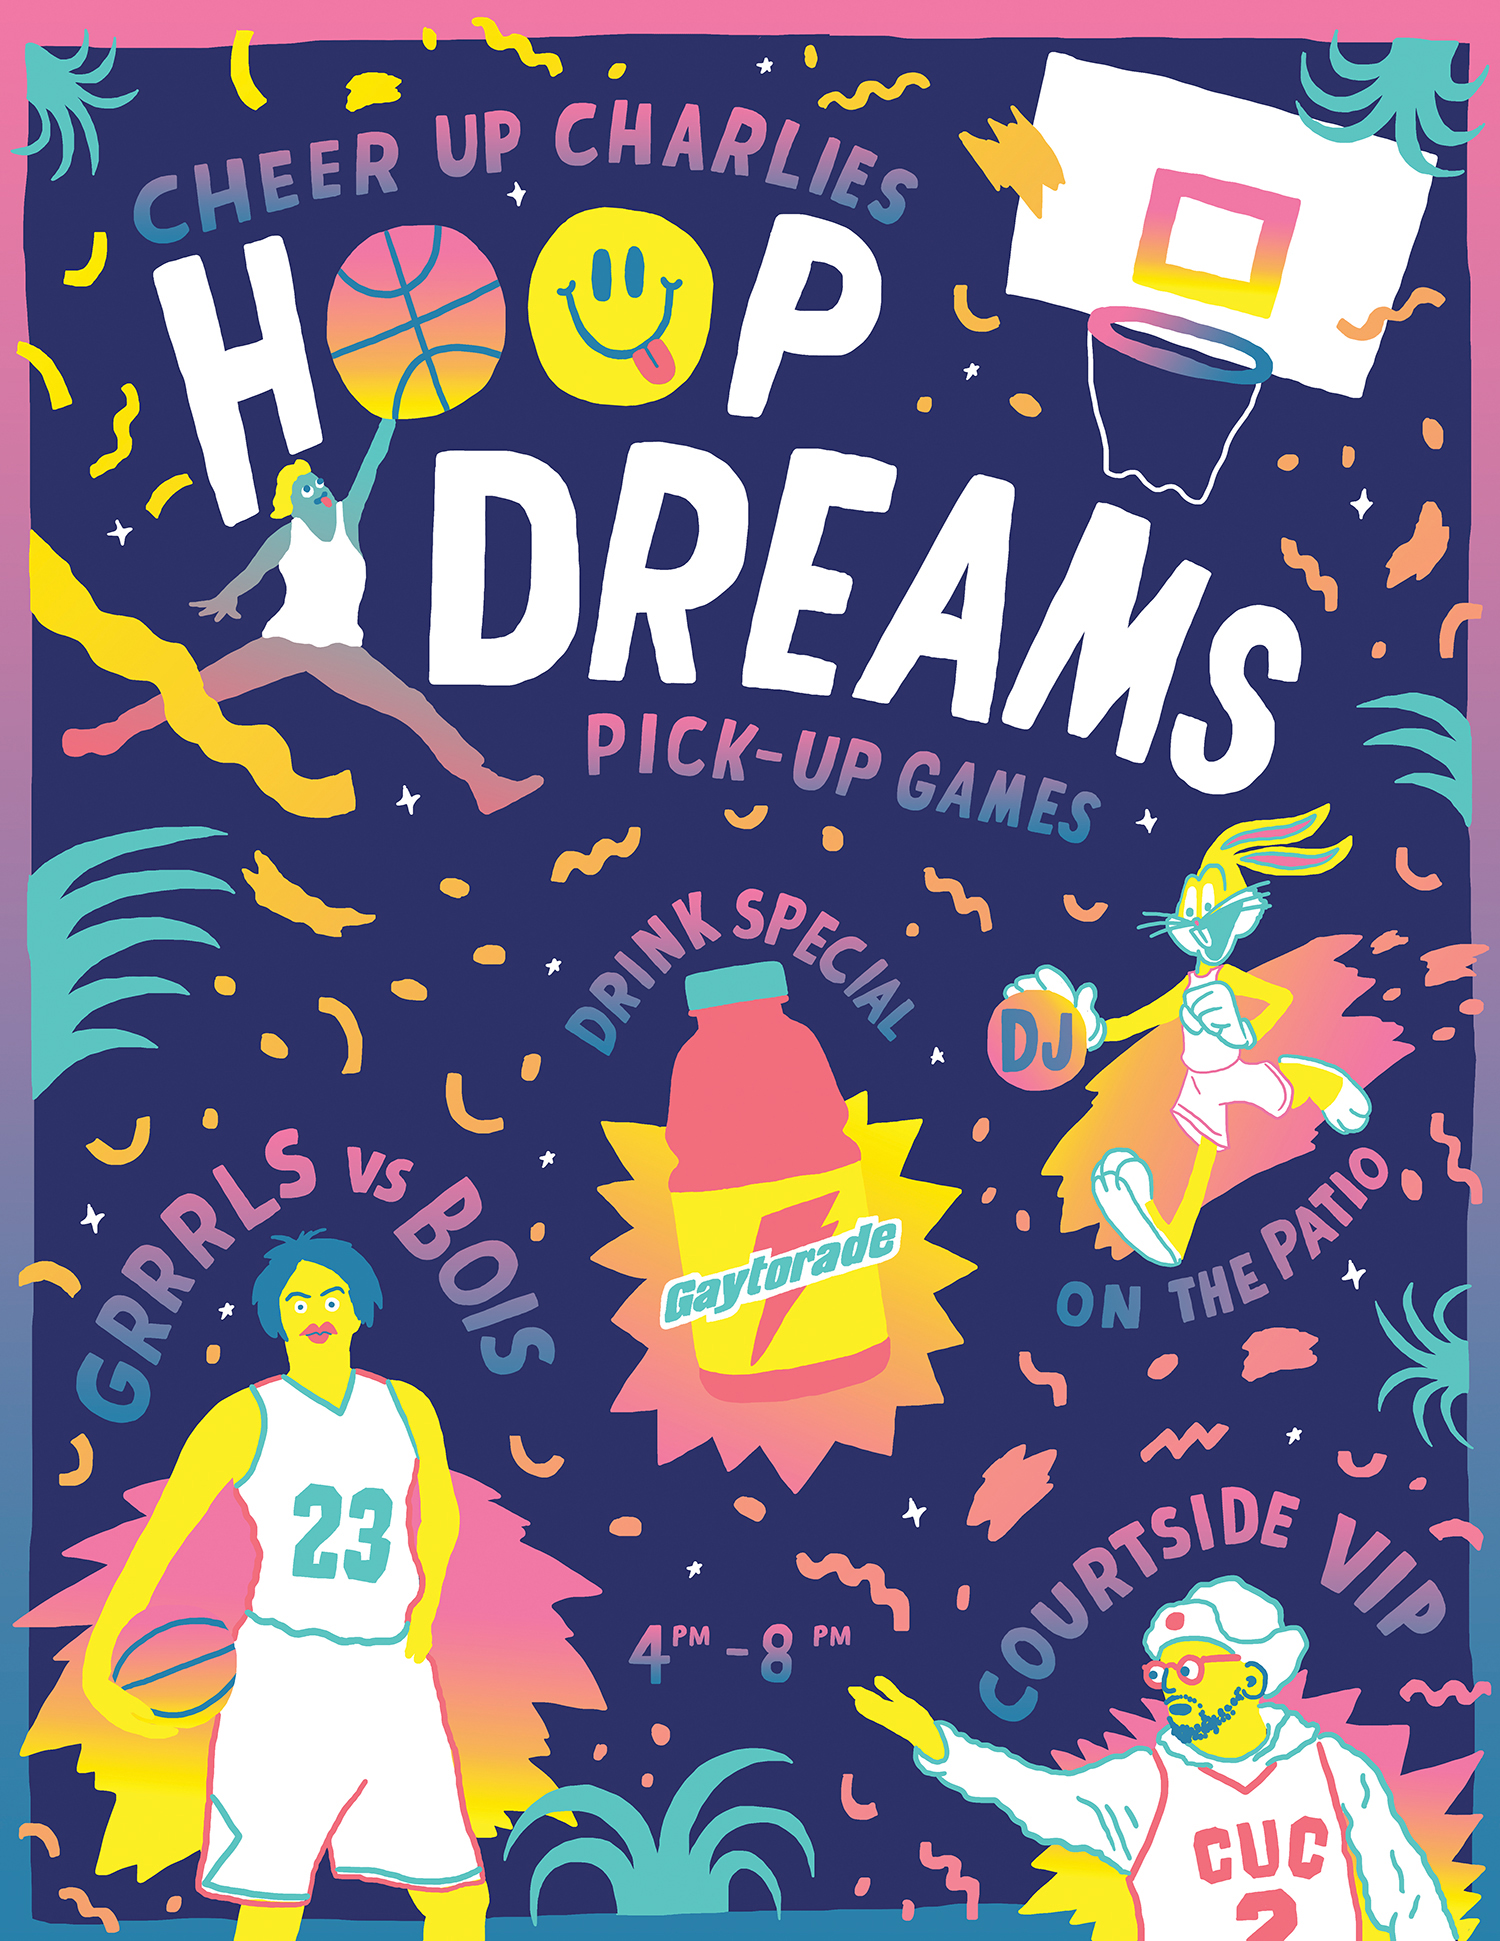 Hoop Dreams poster